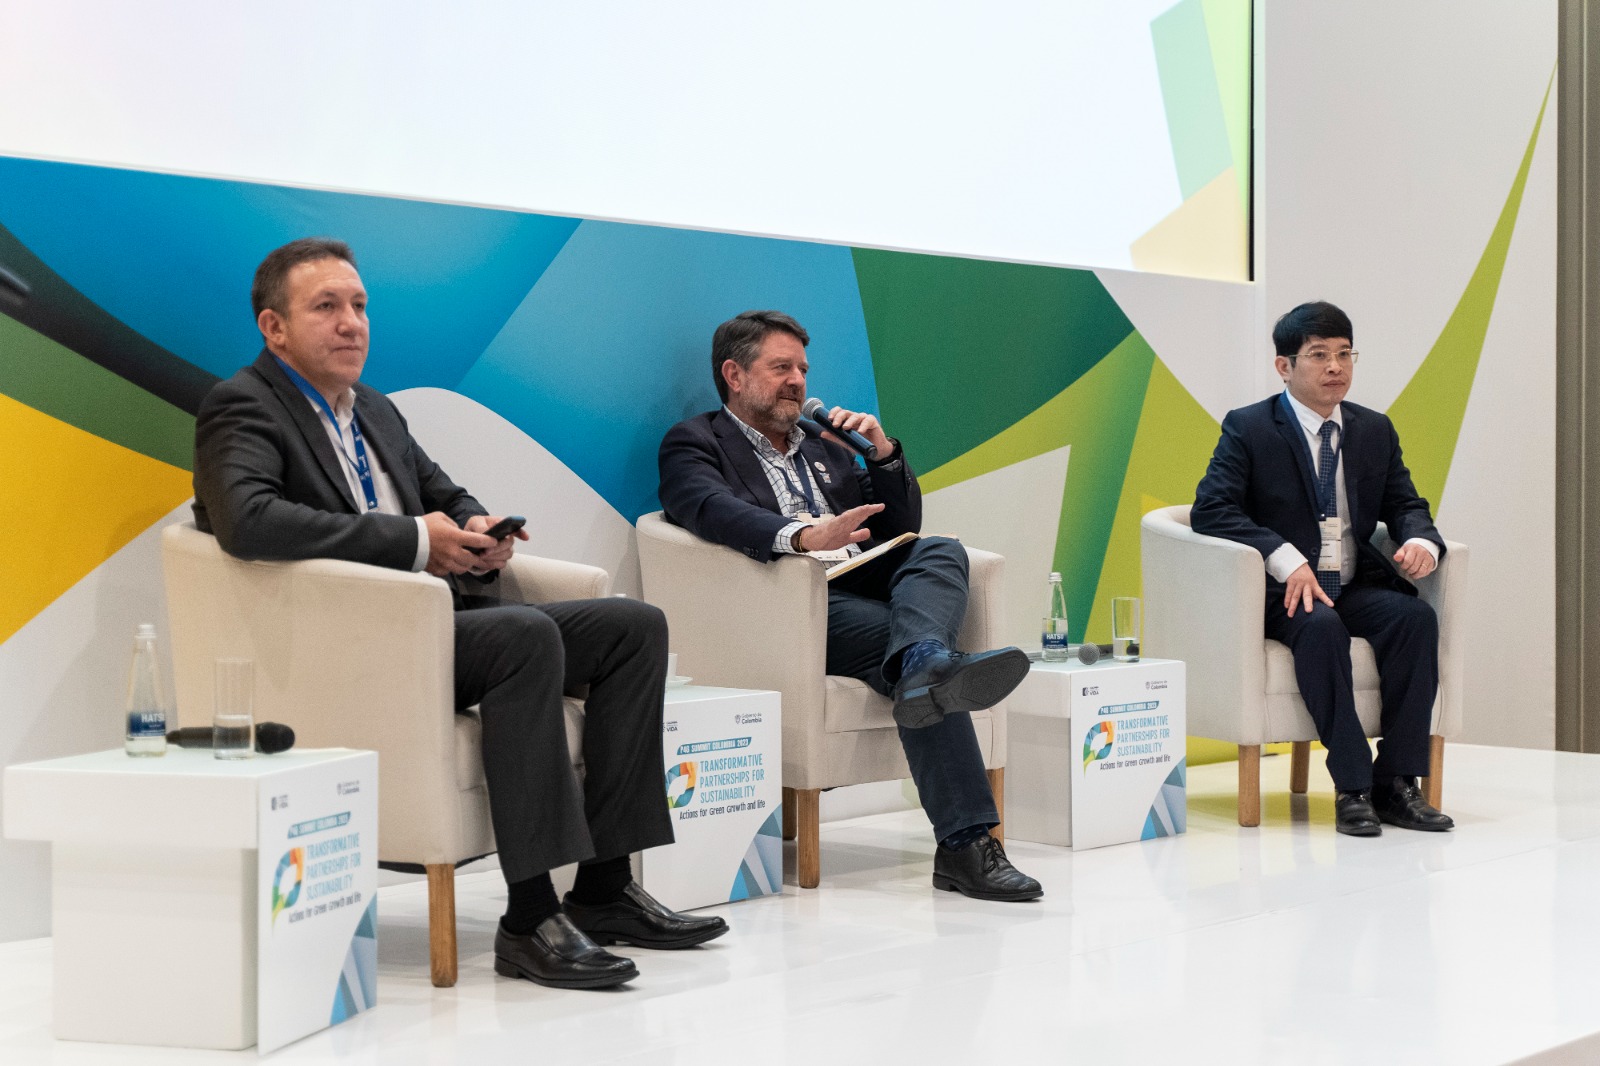 Líderes mundiales y empresarios debatieron sobre los desafíos de las ciudades sostenibles en la Cumbre P4G